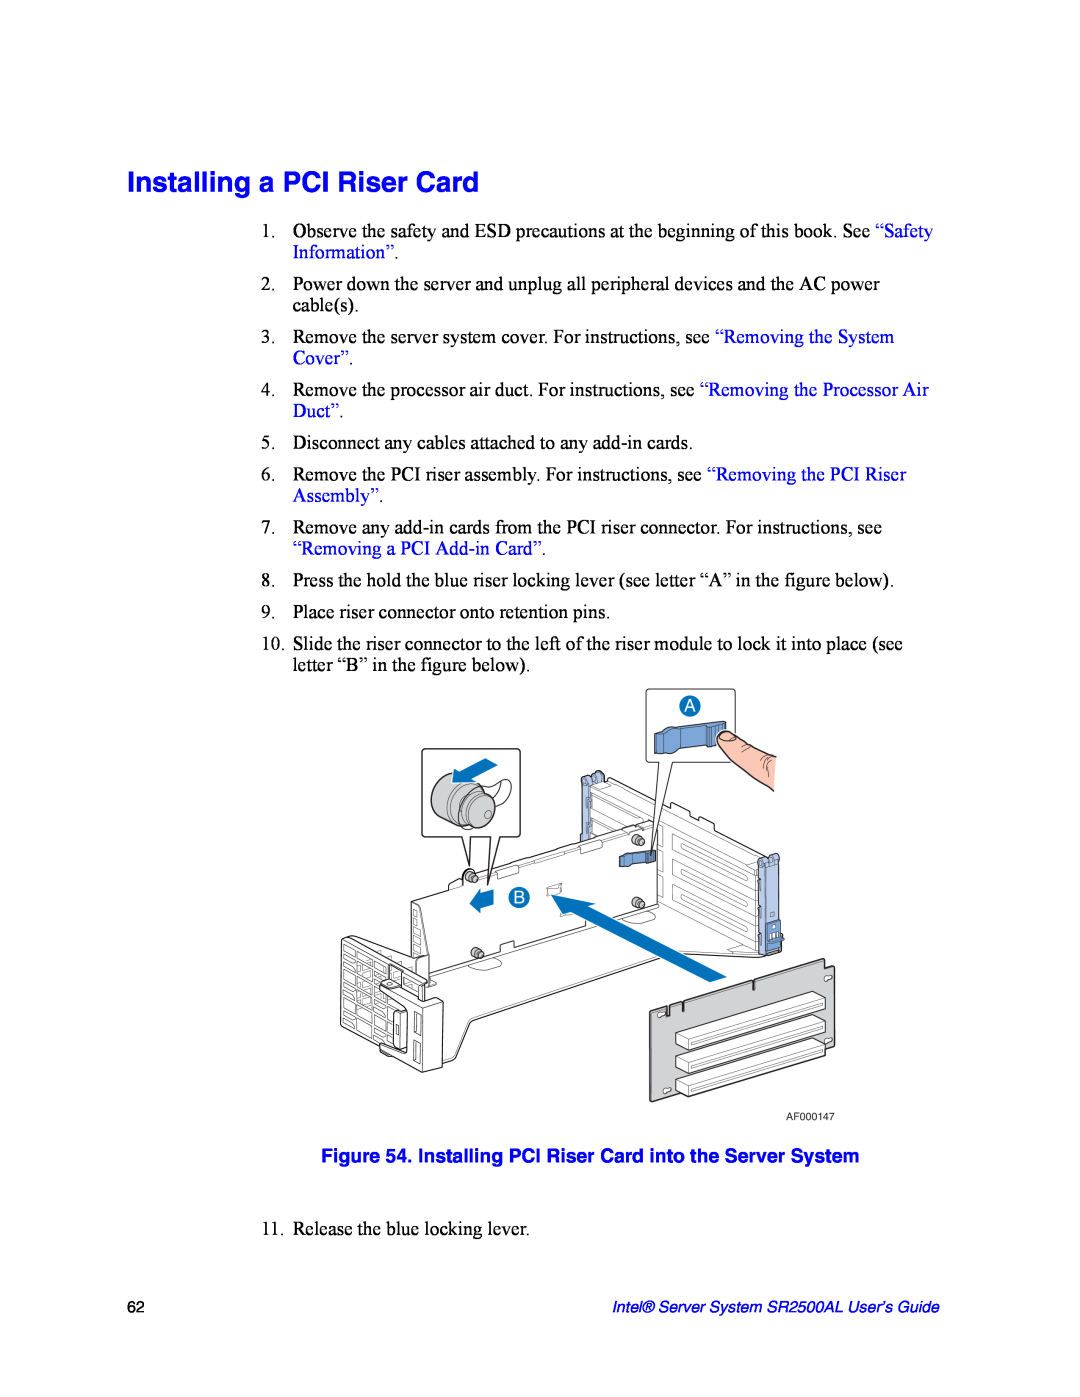 Intel SR2500AL manual Installing a PCI Riser Card, Installing PCI Riser Card into the Server System 